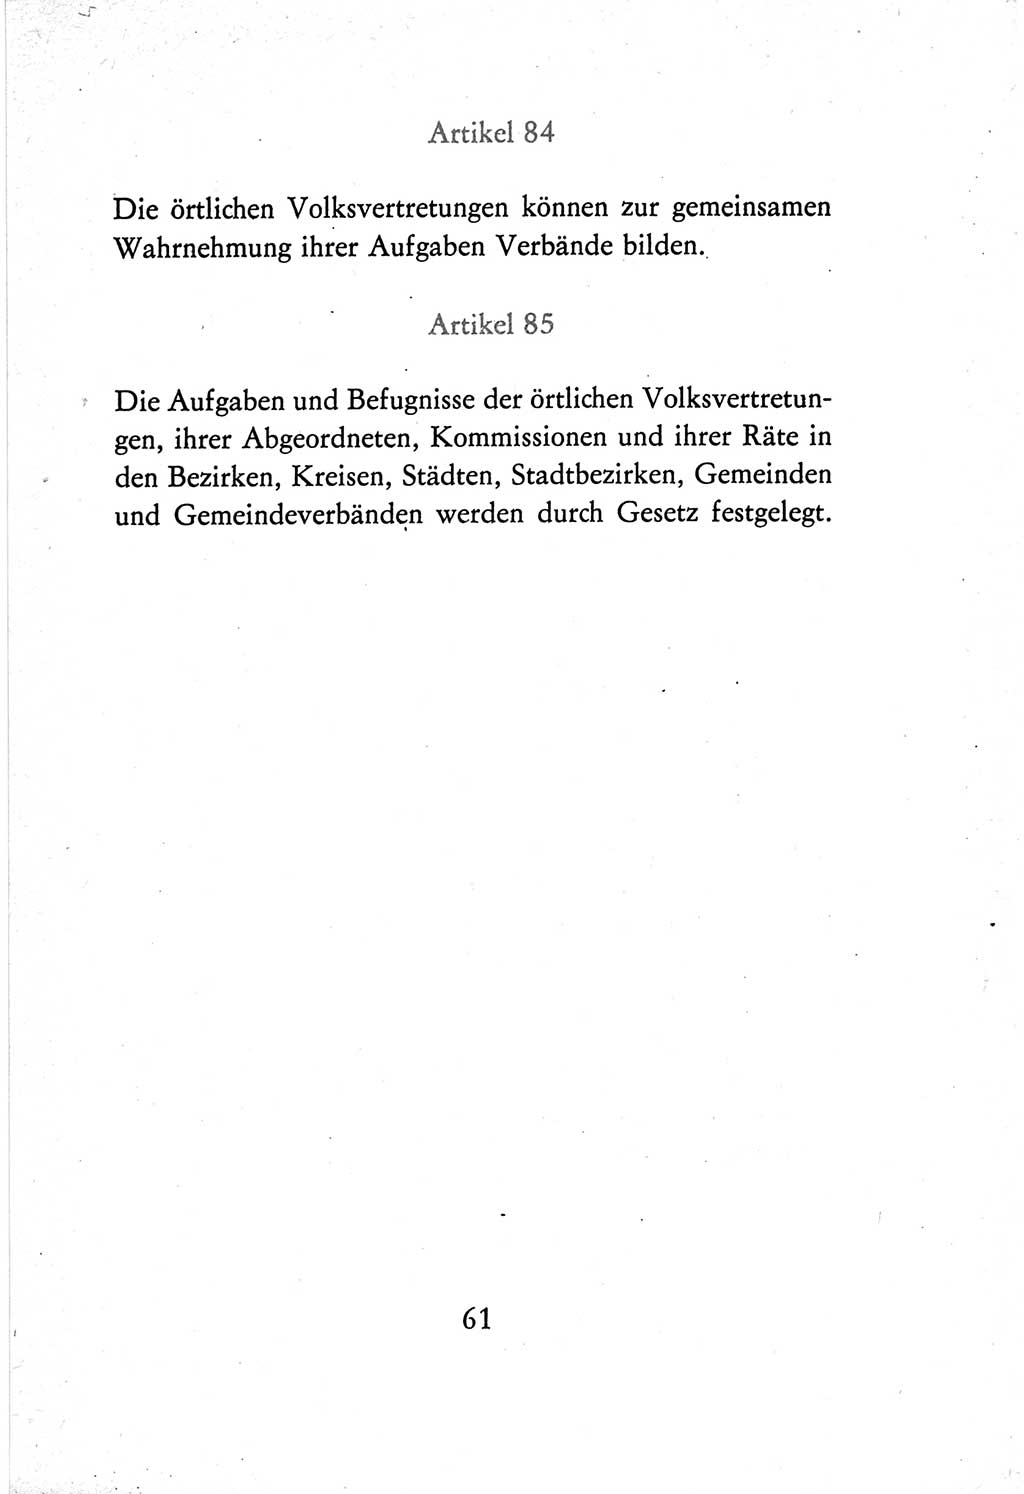 Verfassung der Deutschen Demokratischen Republik (DDR) vom 7. Oktober 1974, Seite 61 (Verf. DDR 1974, S. 61)